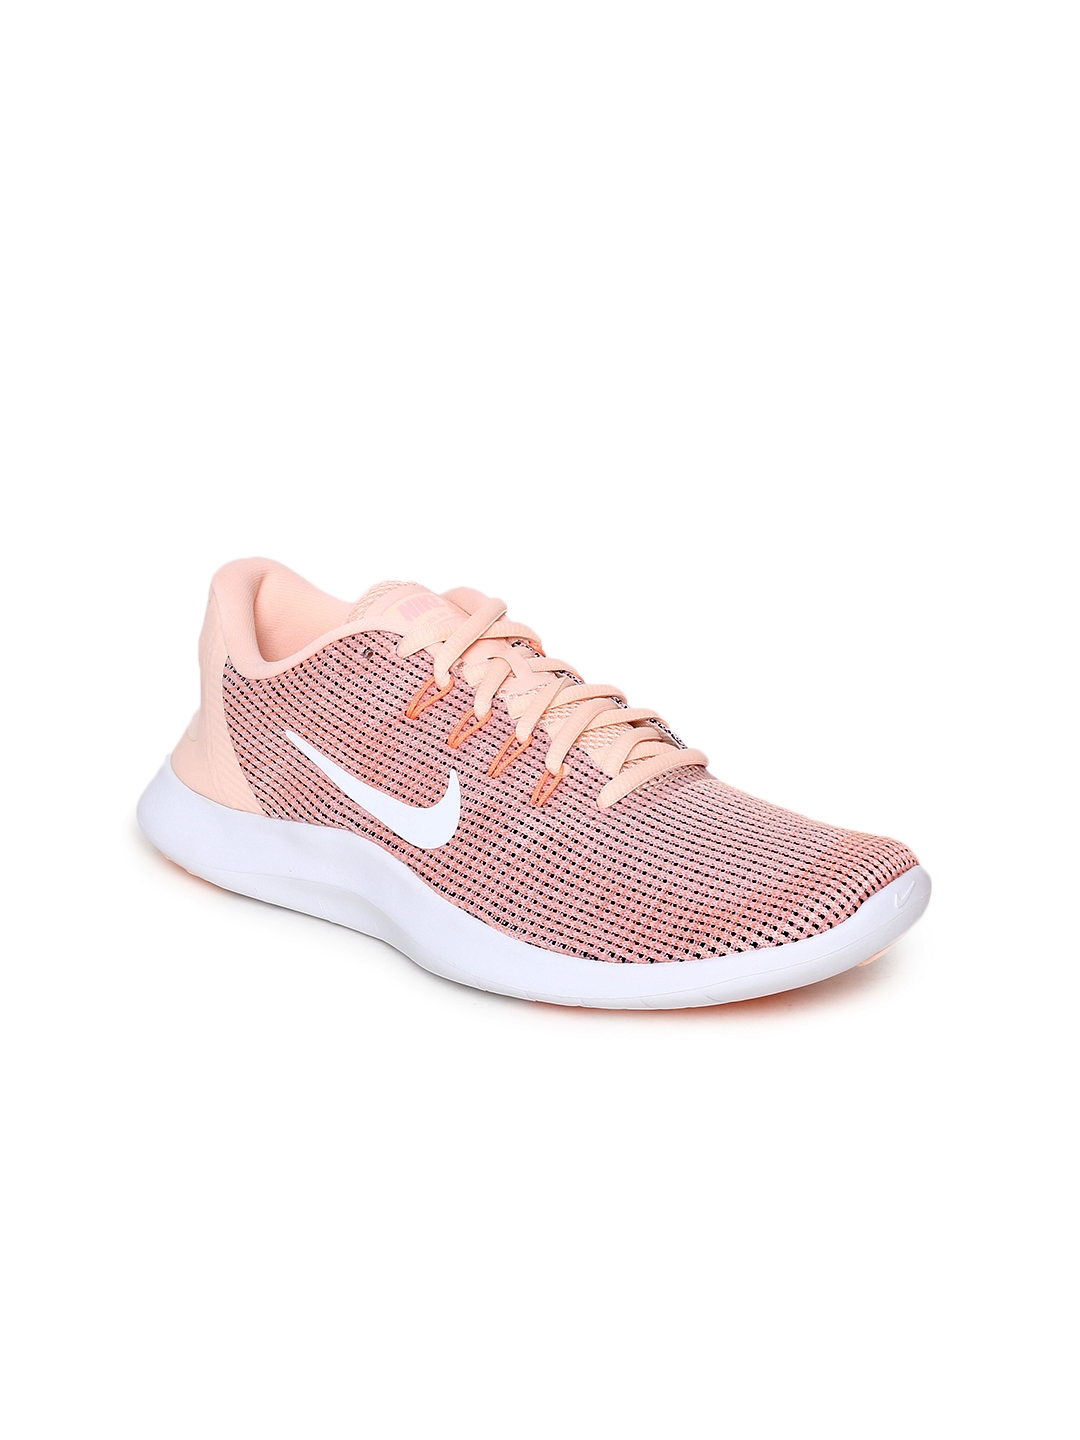 Buy Nike Women Pink Flex 2018 RN 